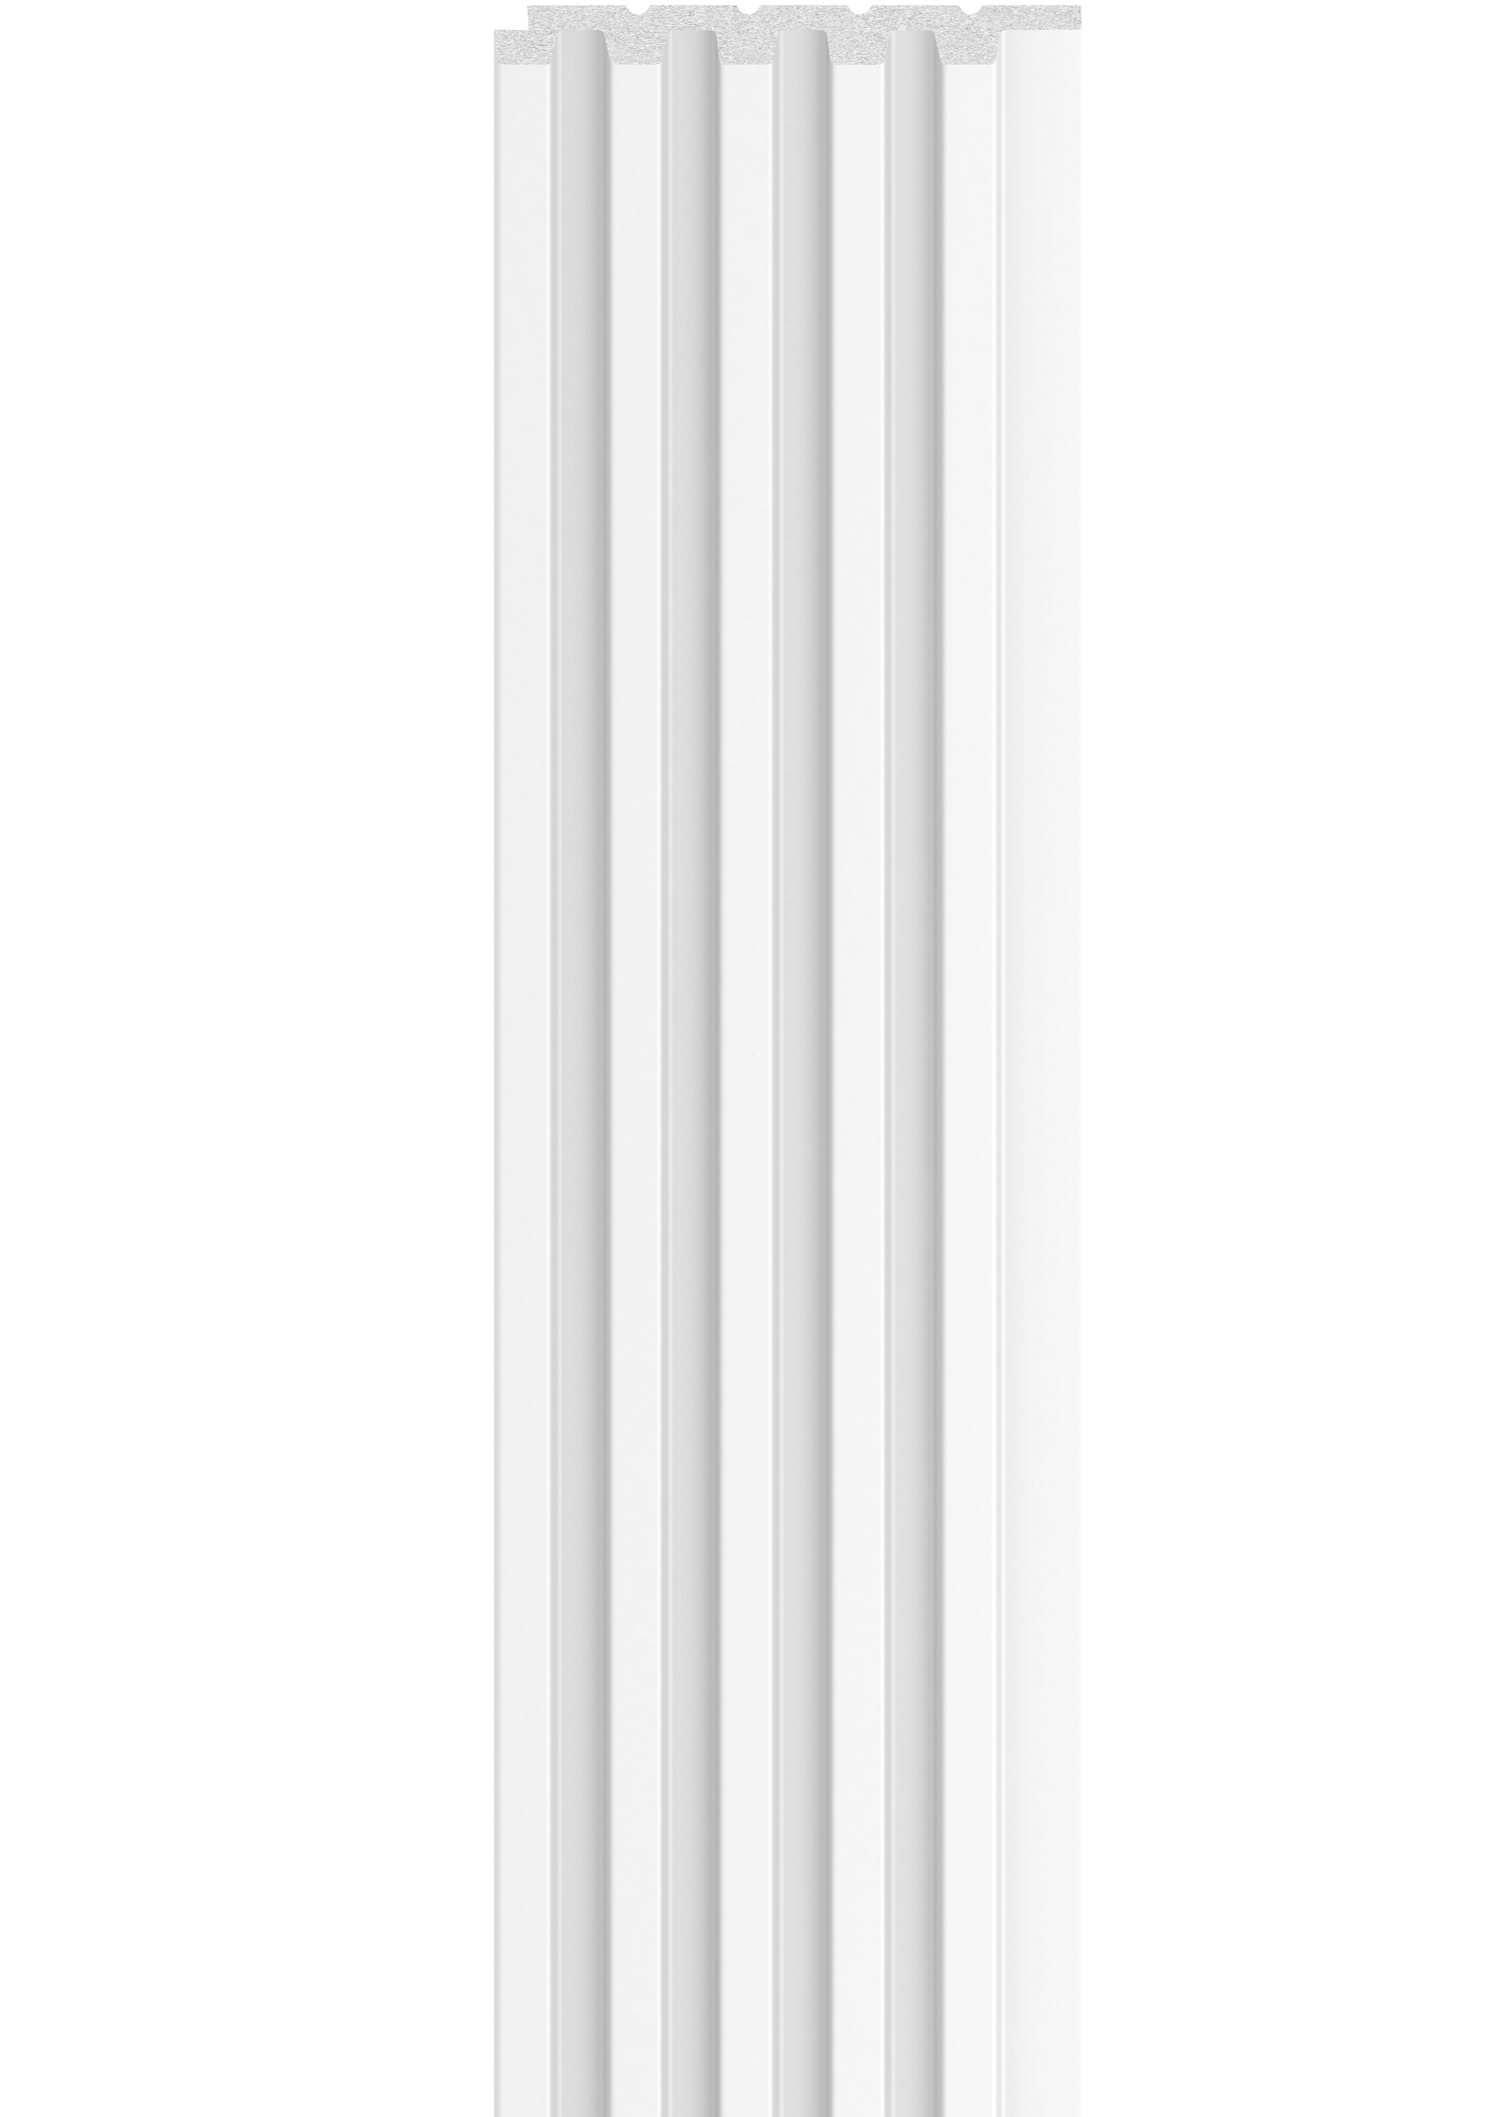 Panou riflaj LINERIO S-LINE WHITE 2650 x 122 x 12 mm